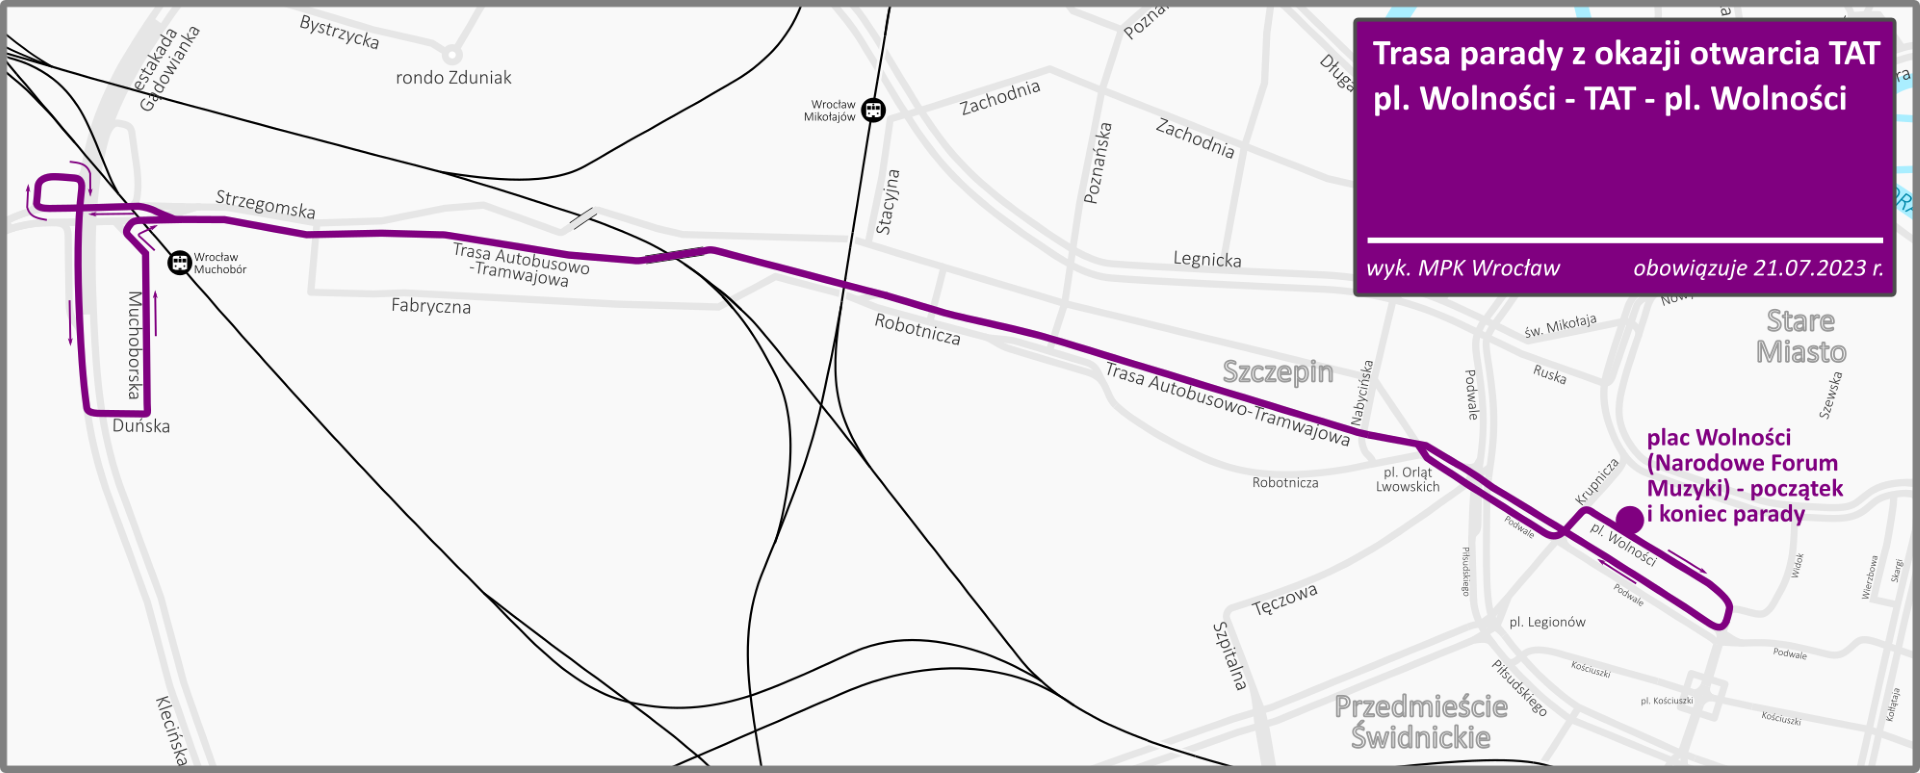 Powiększ obraz: Mapa przedstawiająca trasę parady autobusów po nowej trasie na Nowy Dwór.